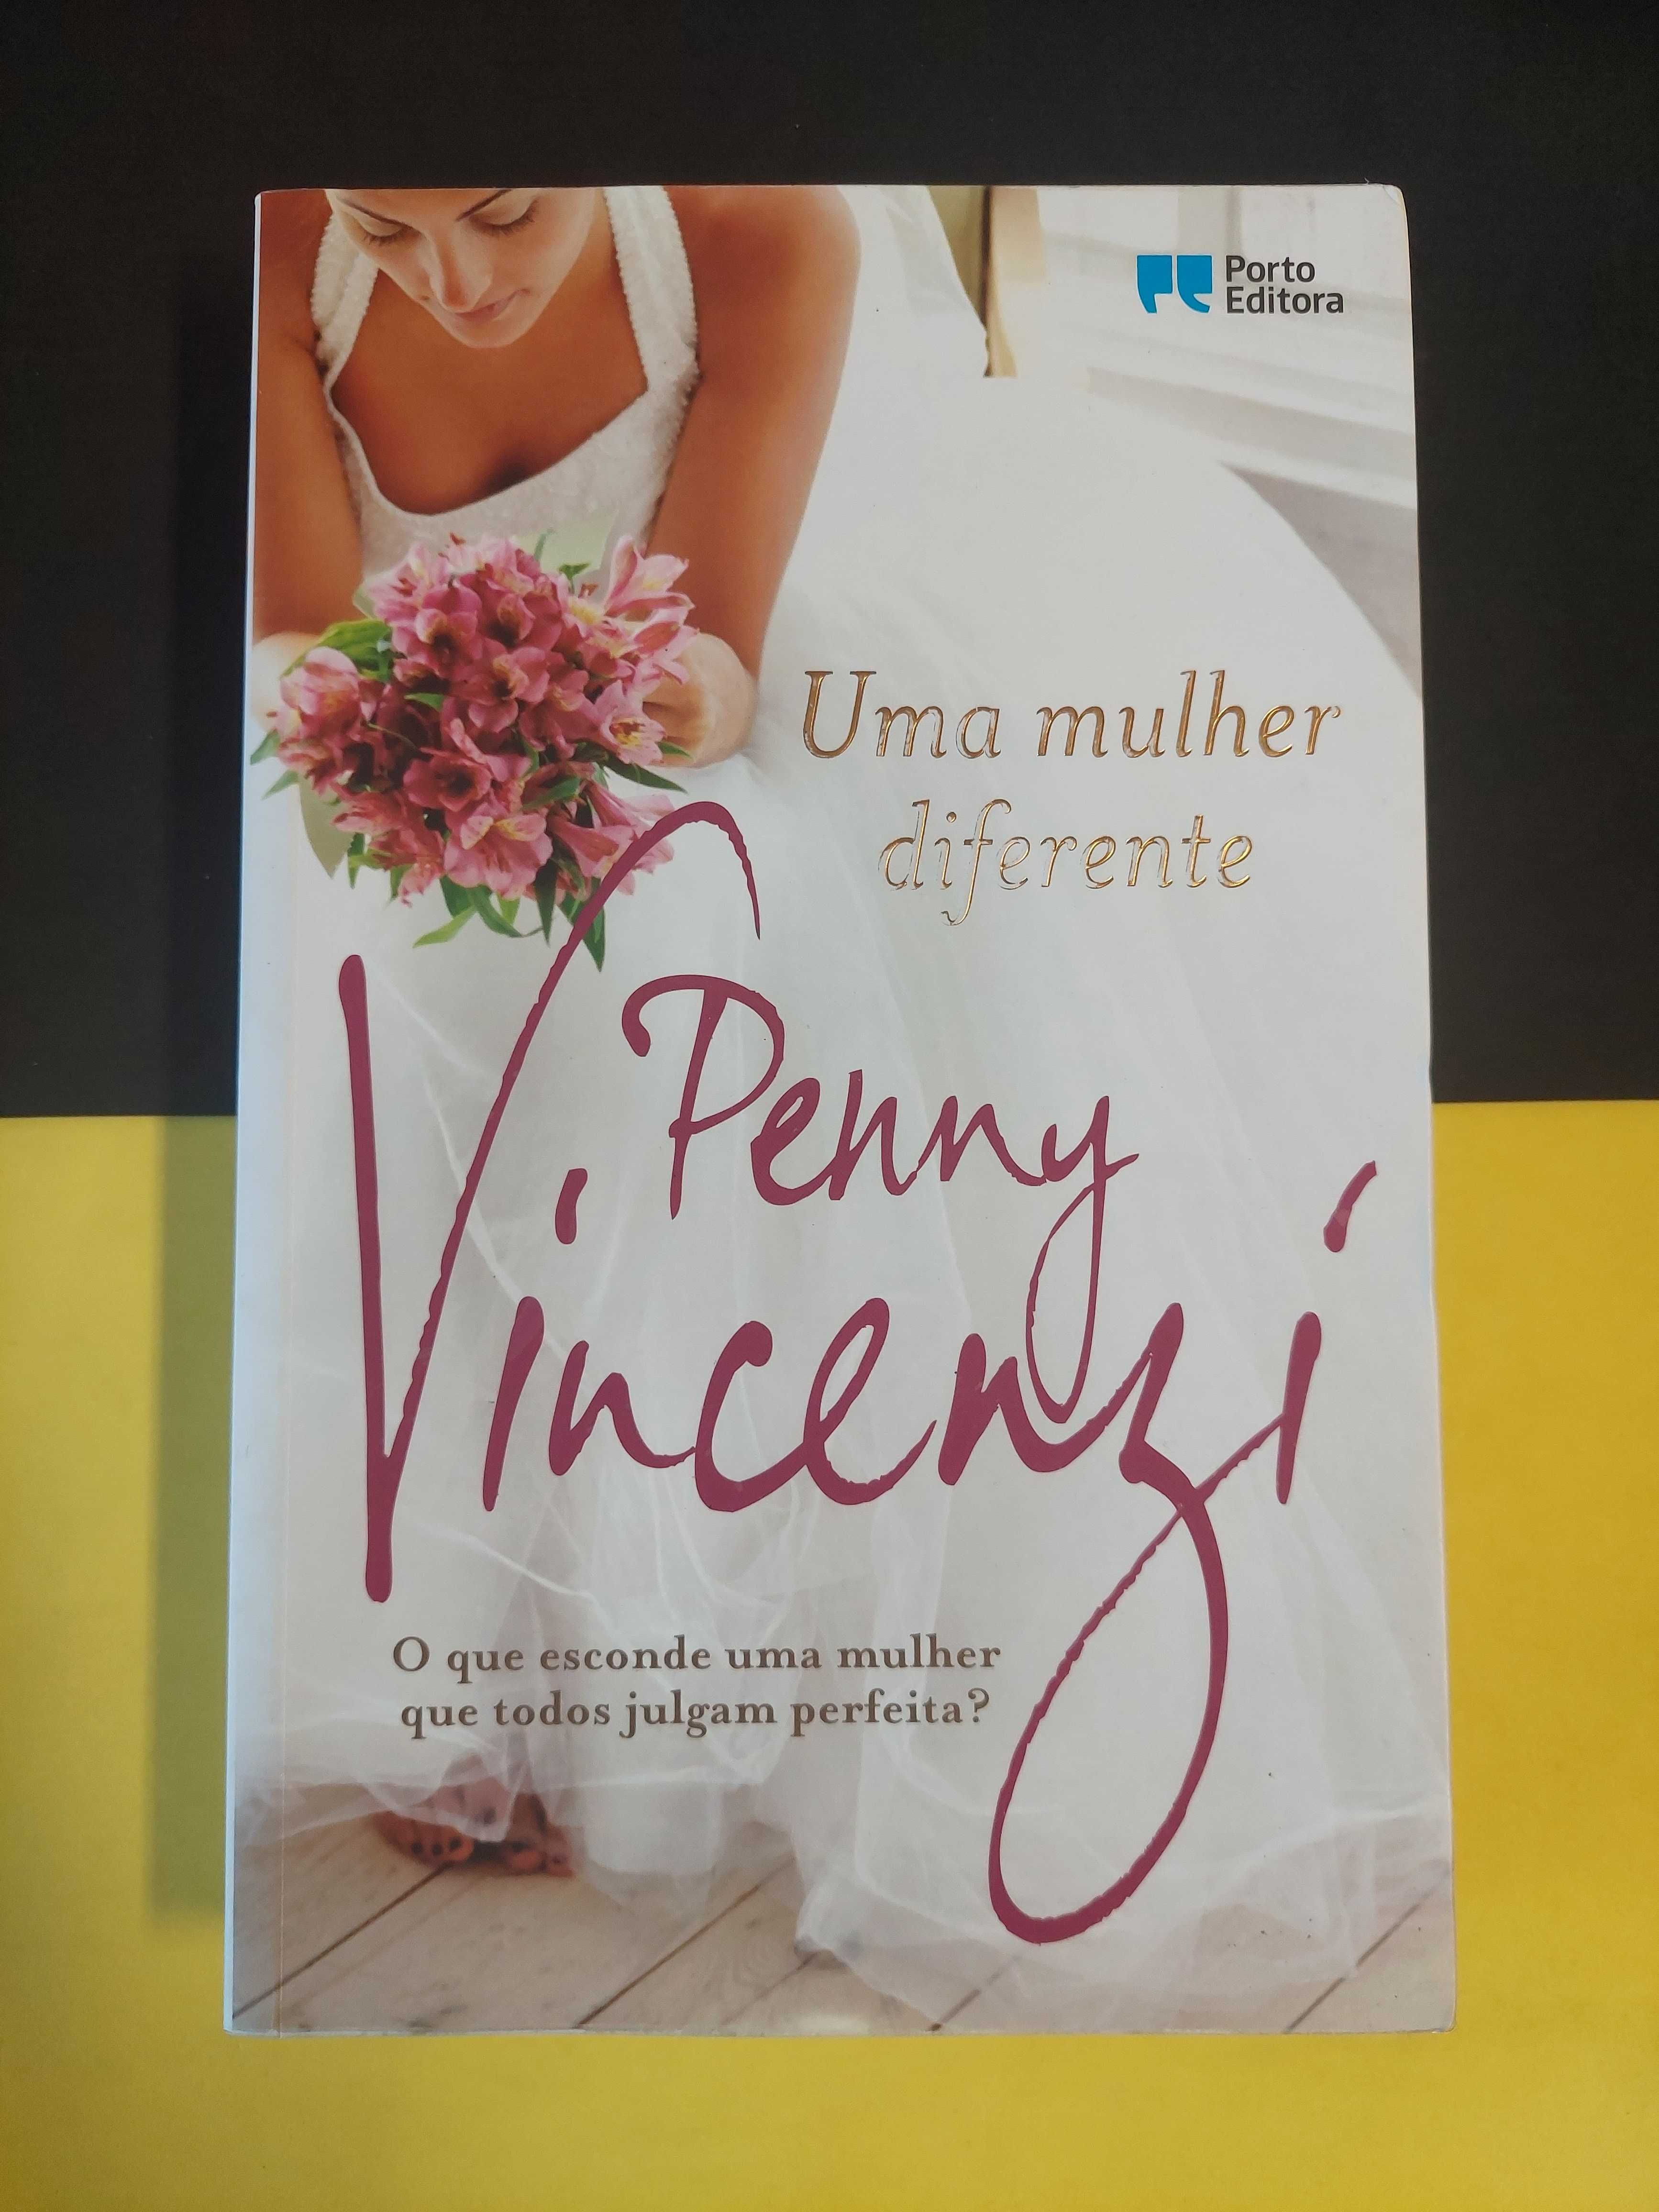 Penny Vincenzi - Uma mulher diferente